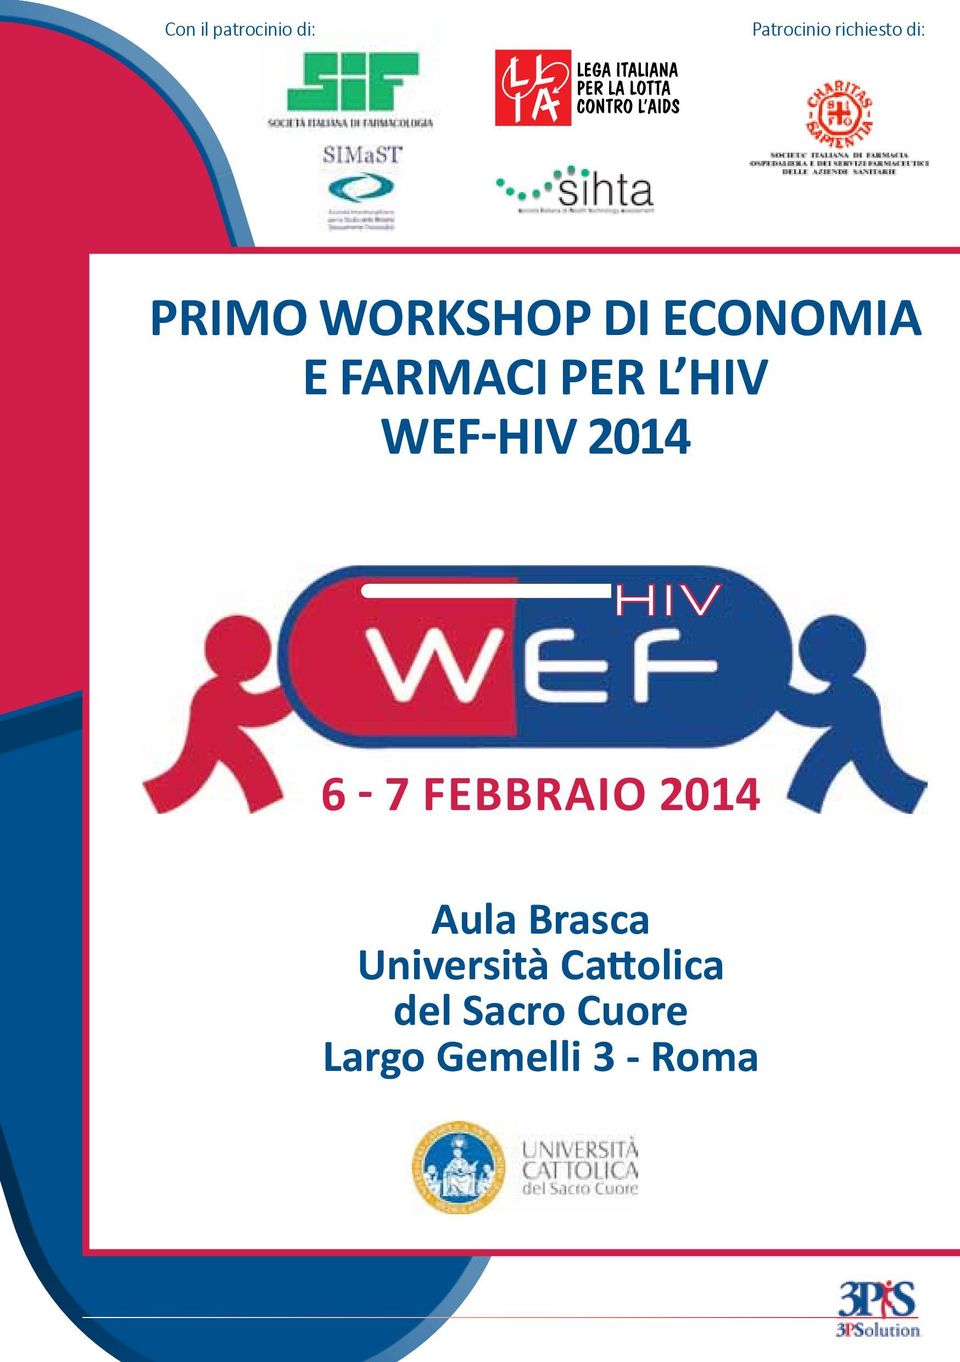 WEF-HIV 2014 6-7 febbraio 2014 Aula Brasca